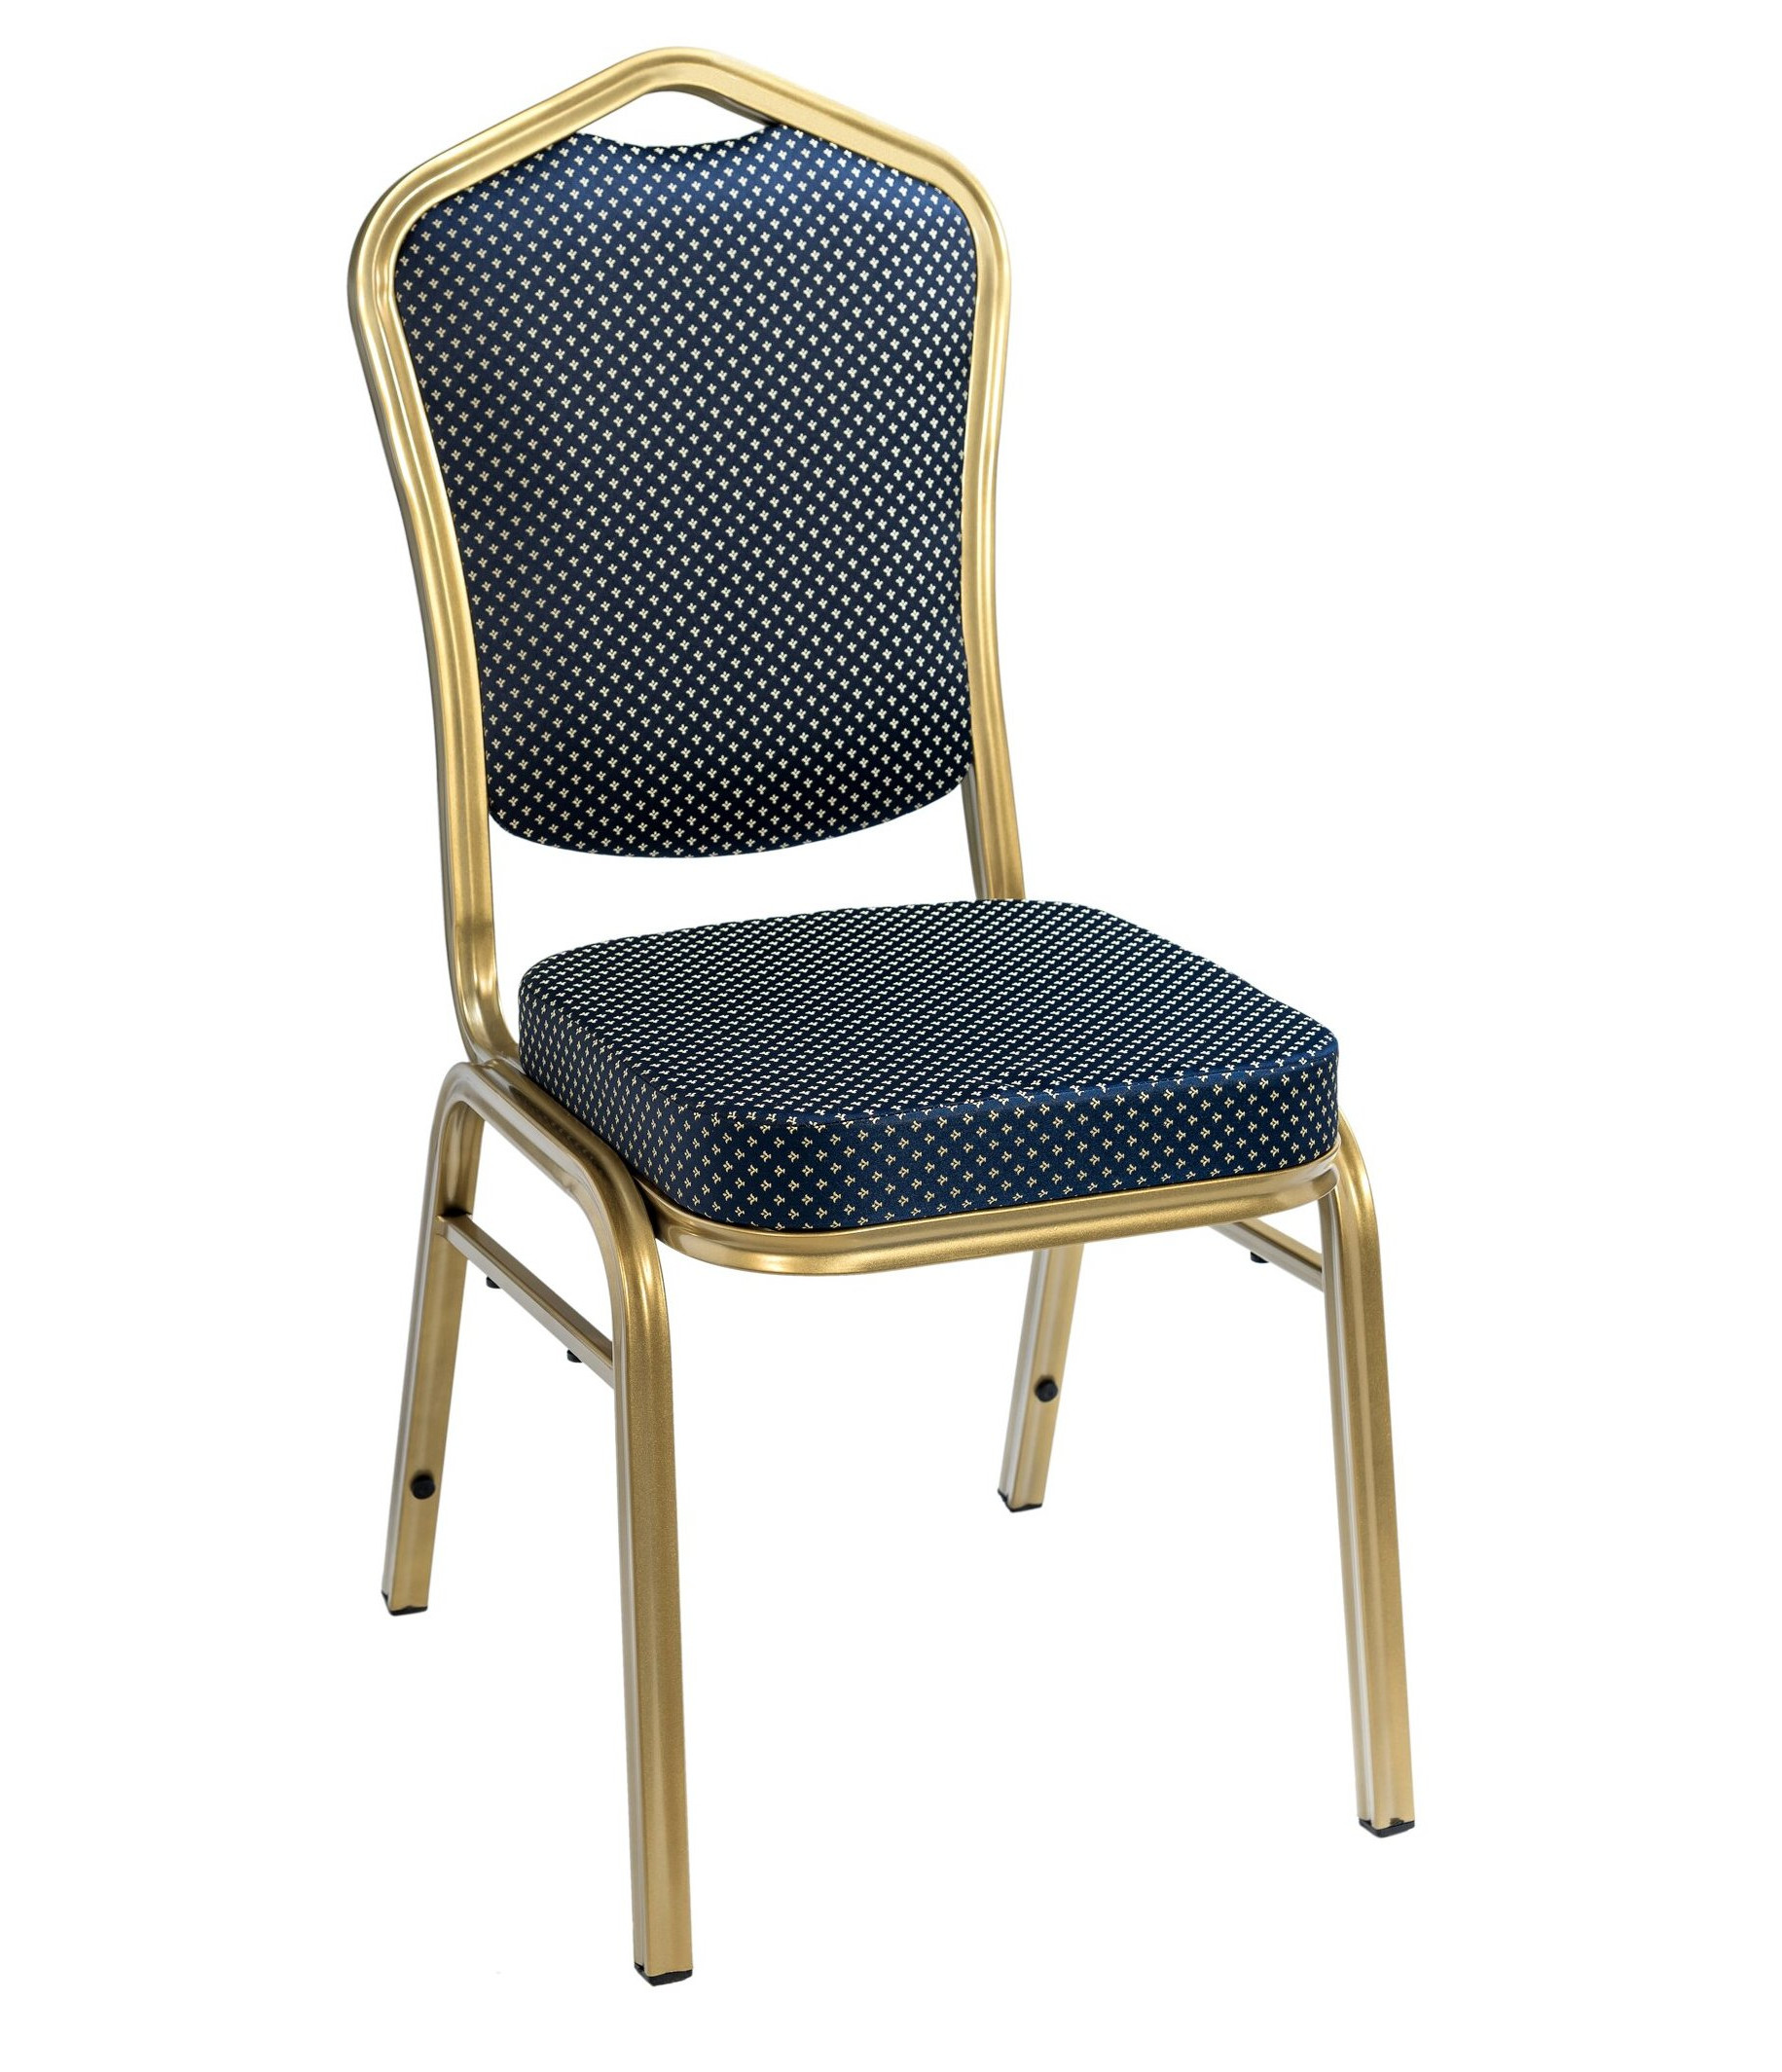 Банкетный стул Квадро 20 мм золотой, синяя корона